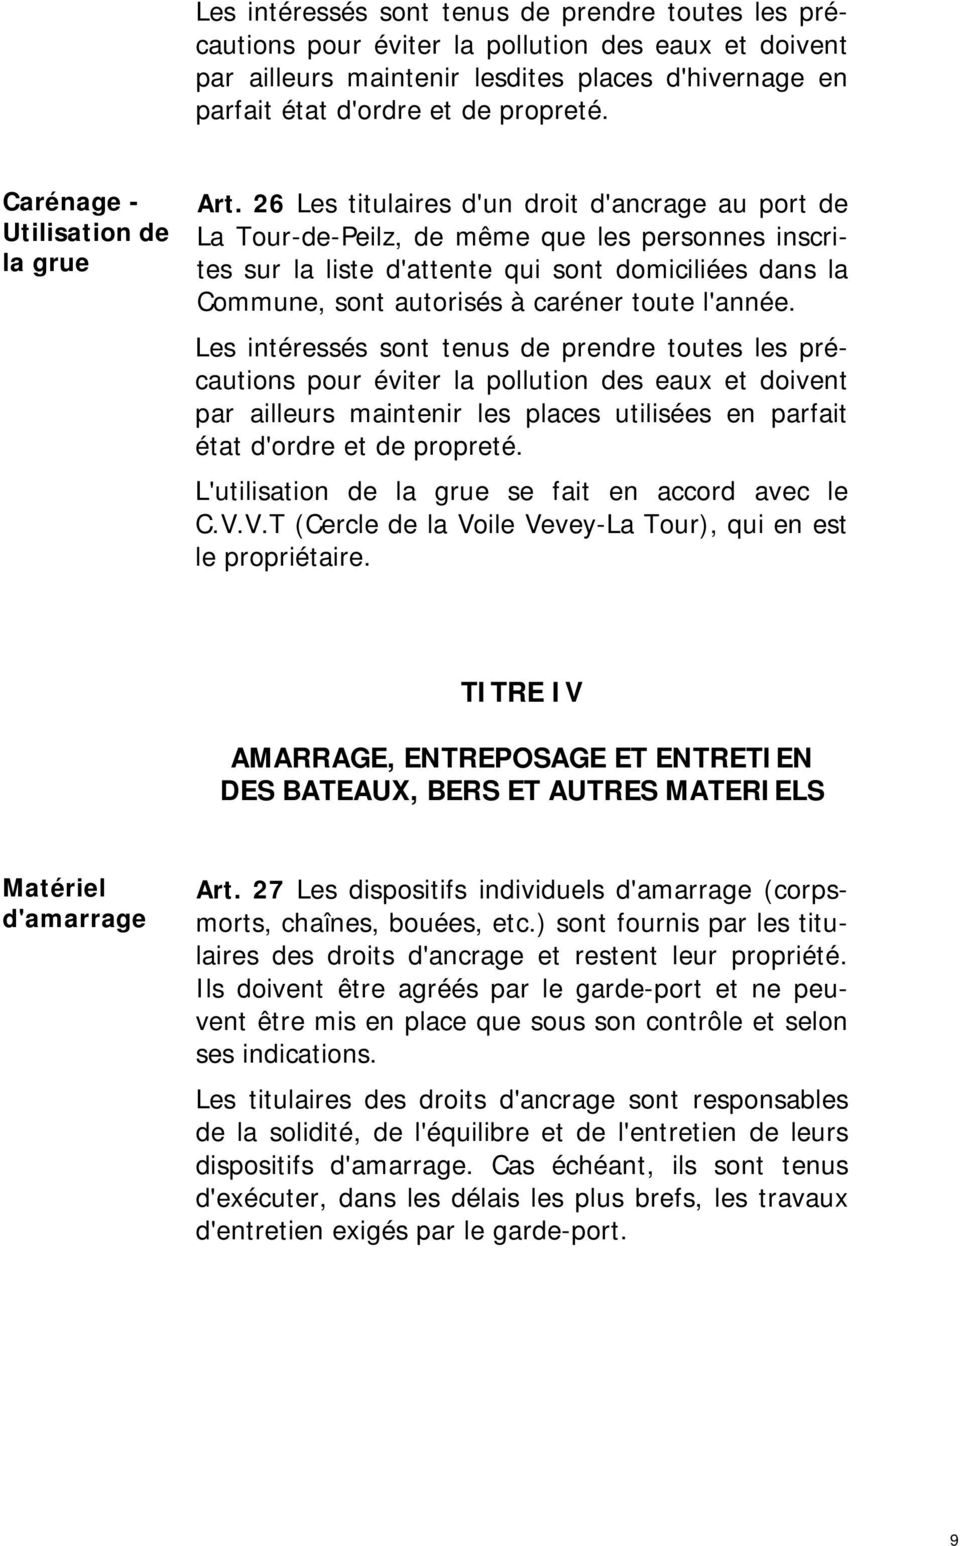 26 Les titulaires d'un droit d'ancrage au port de La Tour-de-Peilz, de même que les personnes inscrites sur la liste d'attente qui sont domiciliées dans la Commune, sont autorisés à caréner toute